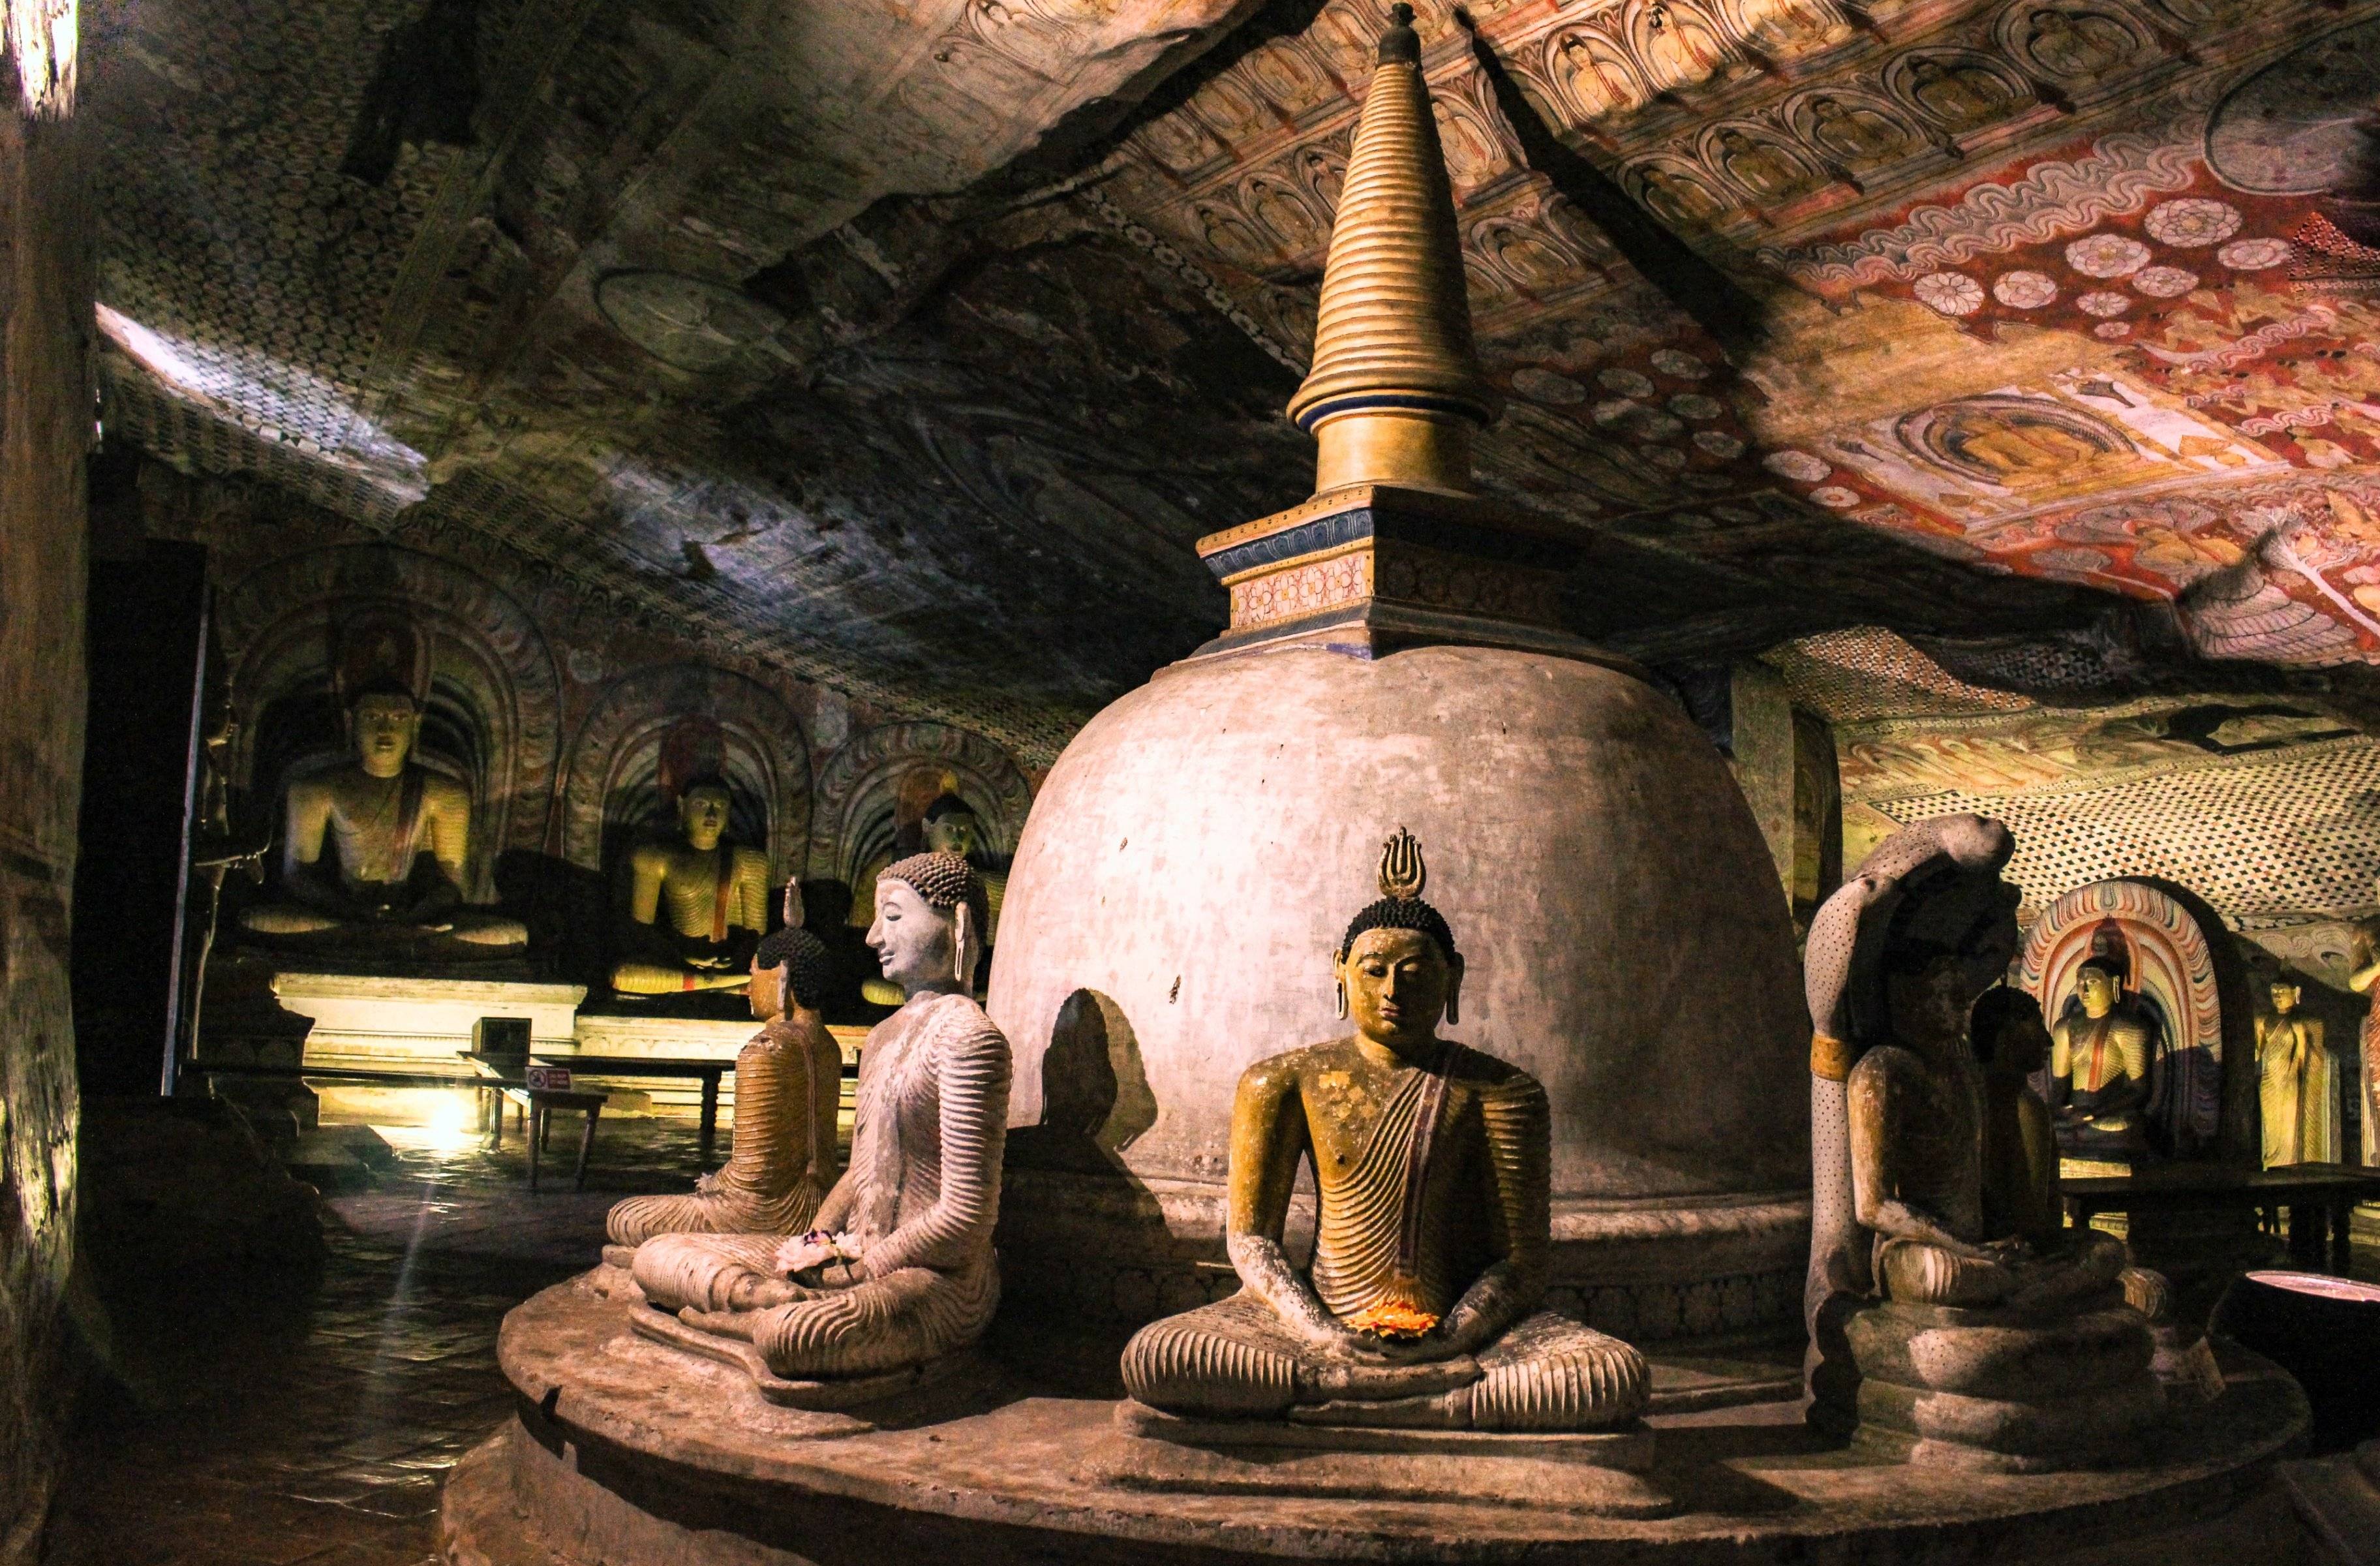 Visita al Templo de la Cueva de Dambulla / Visita al Jardín de Especias de Matale / Visita al Templo de la Reliquia del Diente